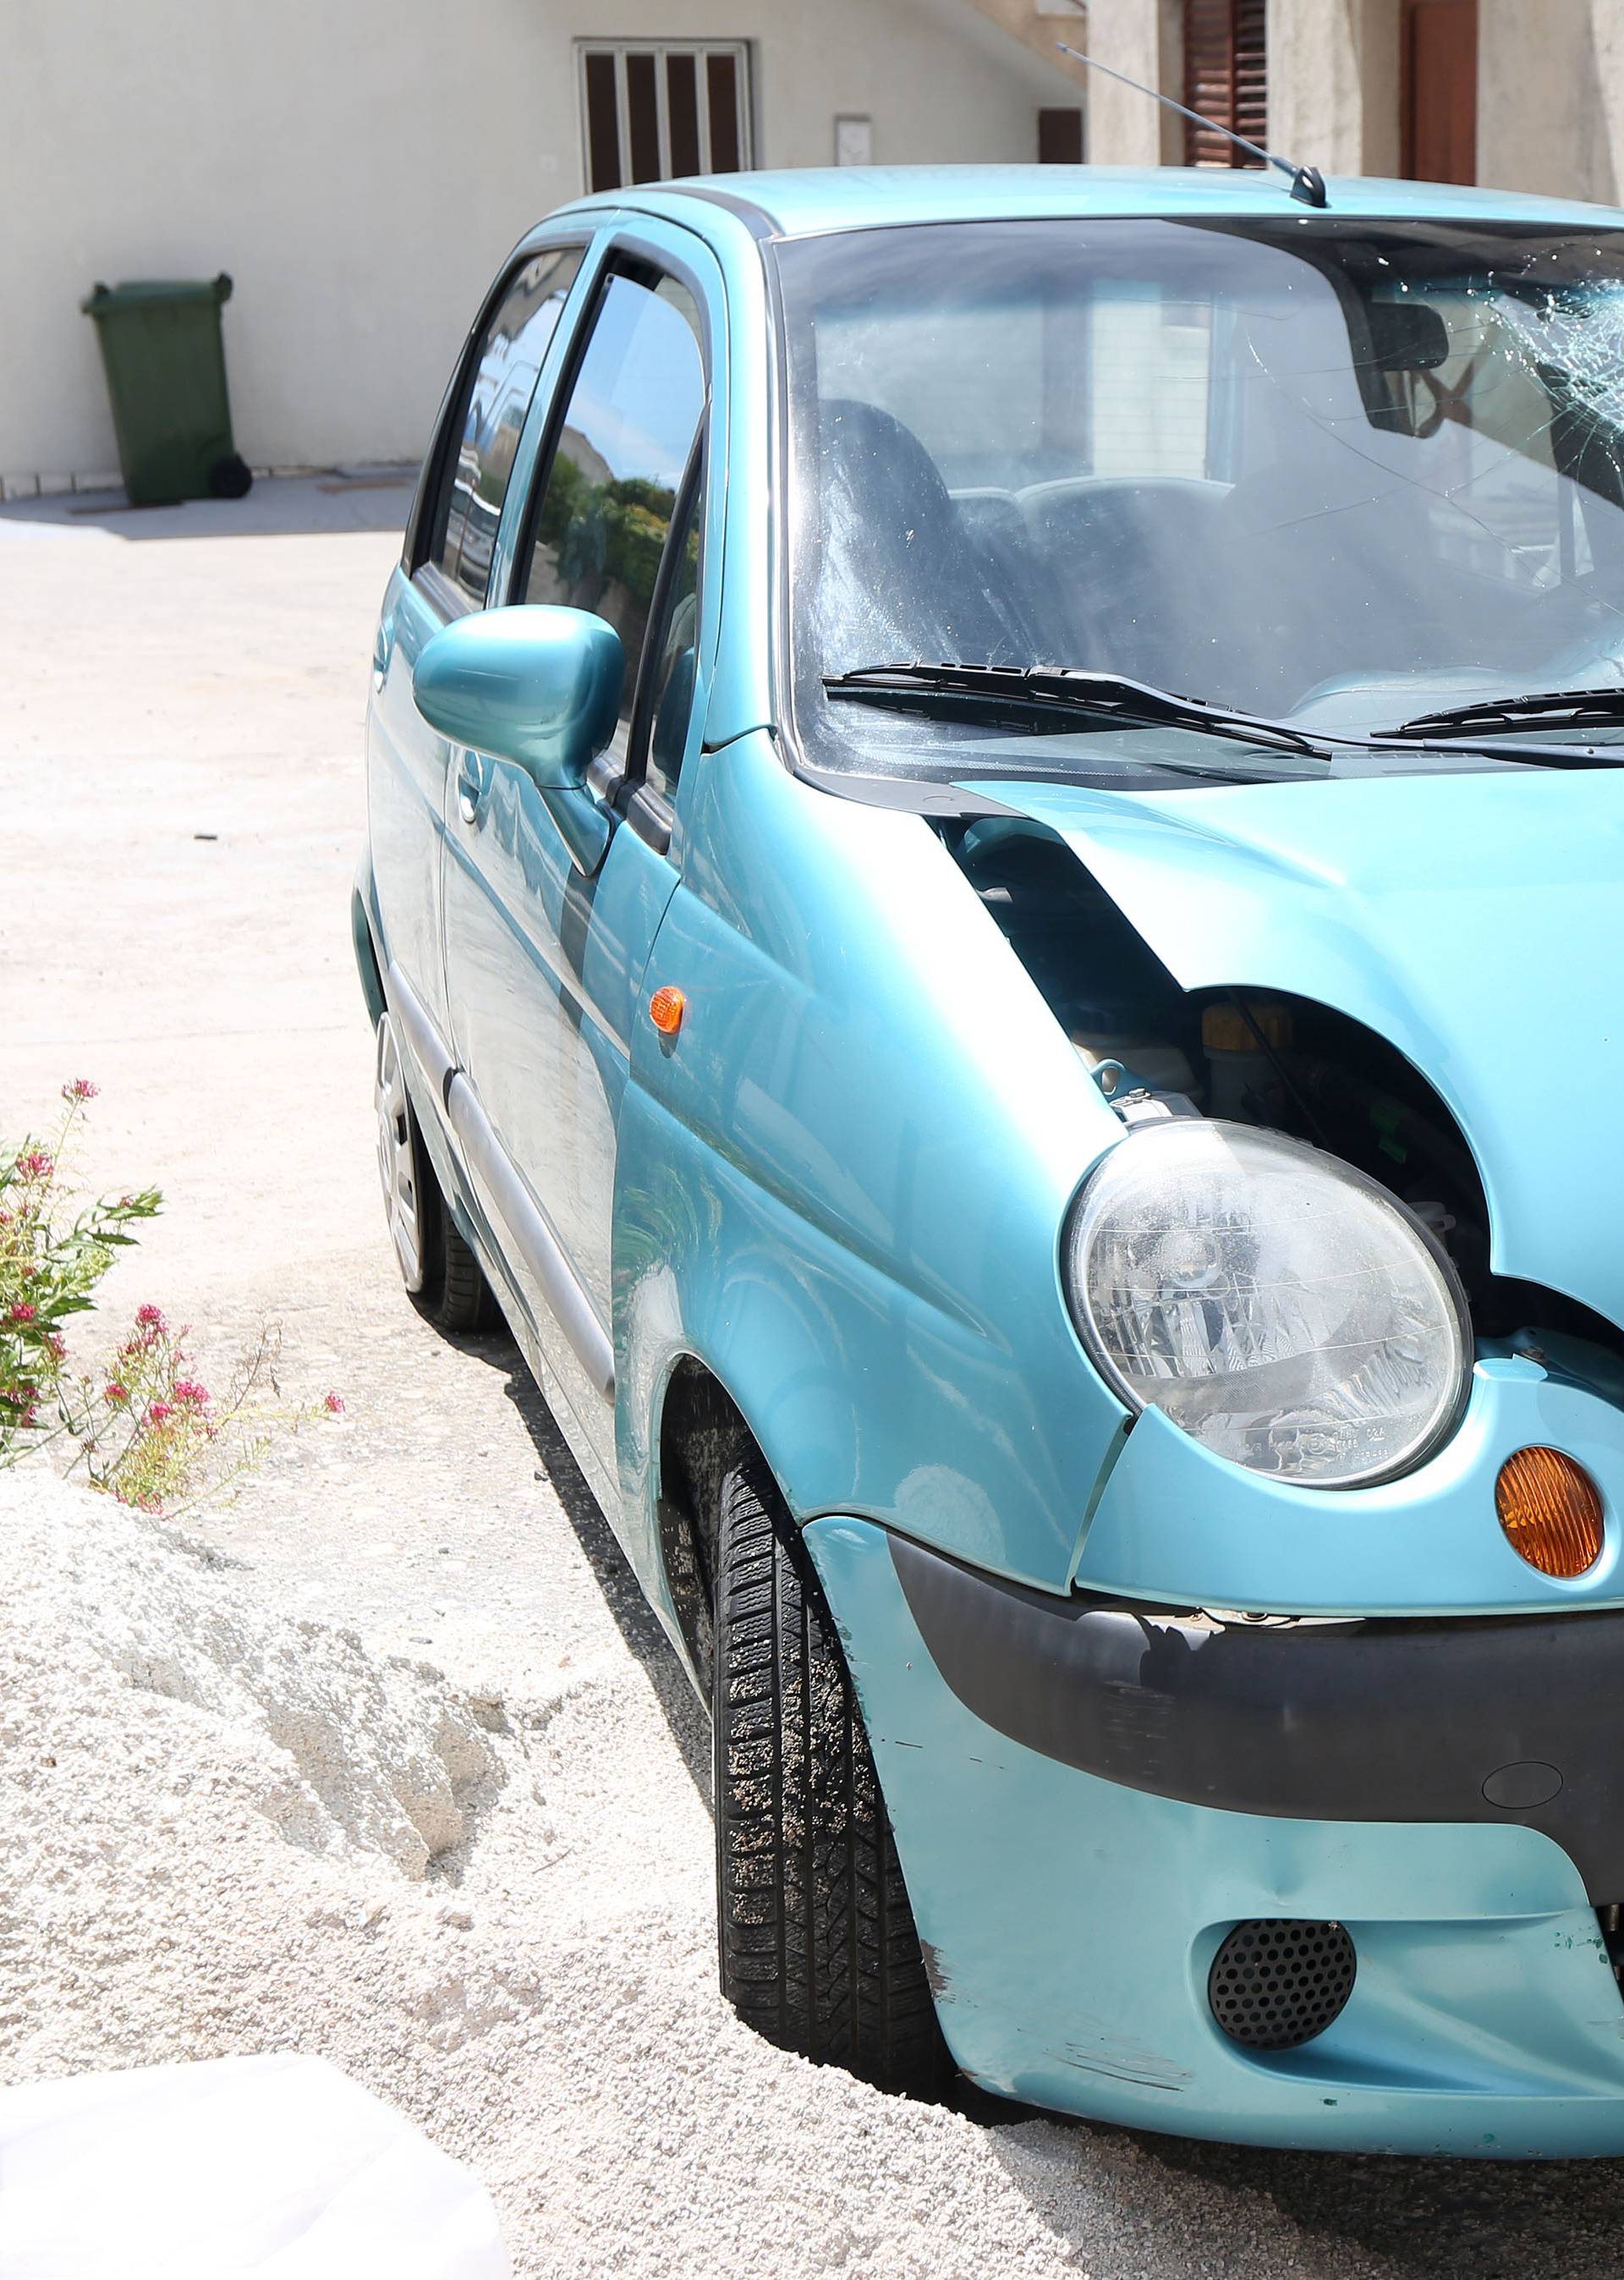 Nesreća u Primoštenu: Vozač izgubio bitku za život u bolnici